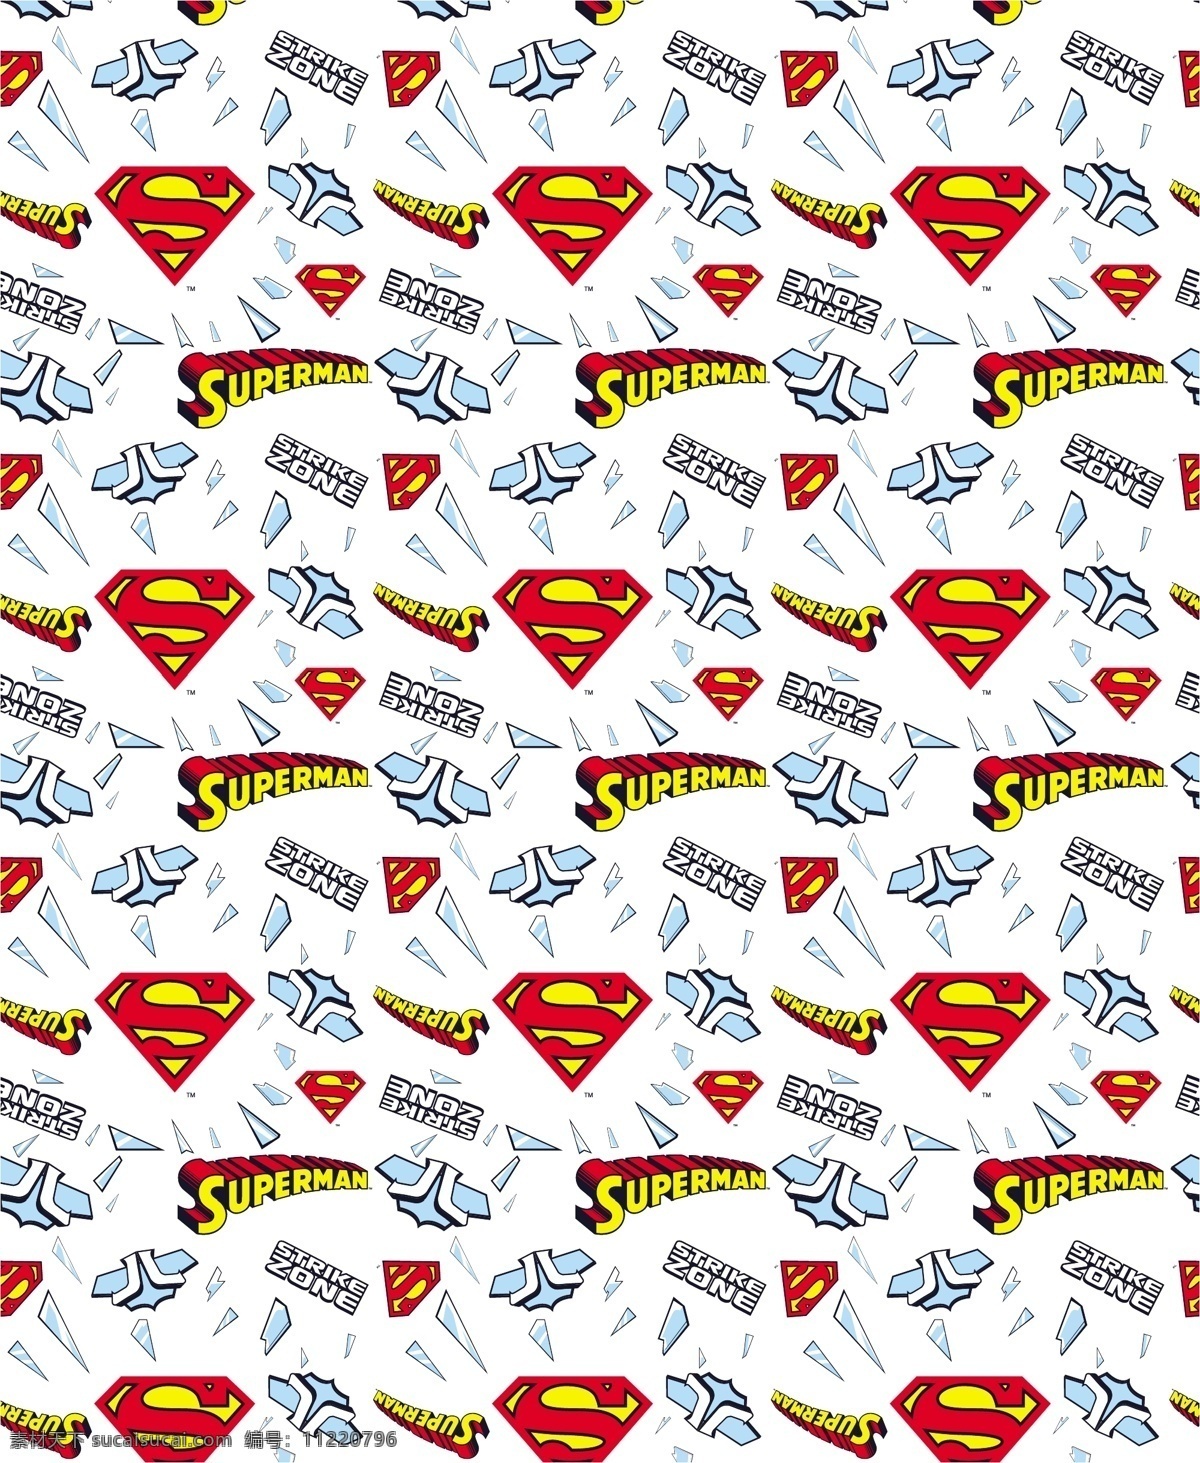 服装印花 标志 超人 superman 蝙蝠侠 batman 闪电侠 flash 华纳 dc漫画 超级英雄 英雄联盟 卡通形象 其他人物 矢量人物 矢量 其他设计